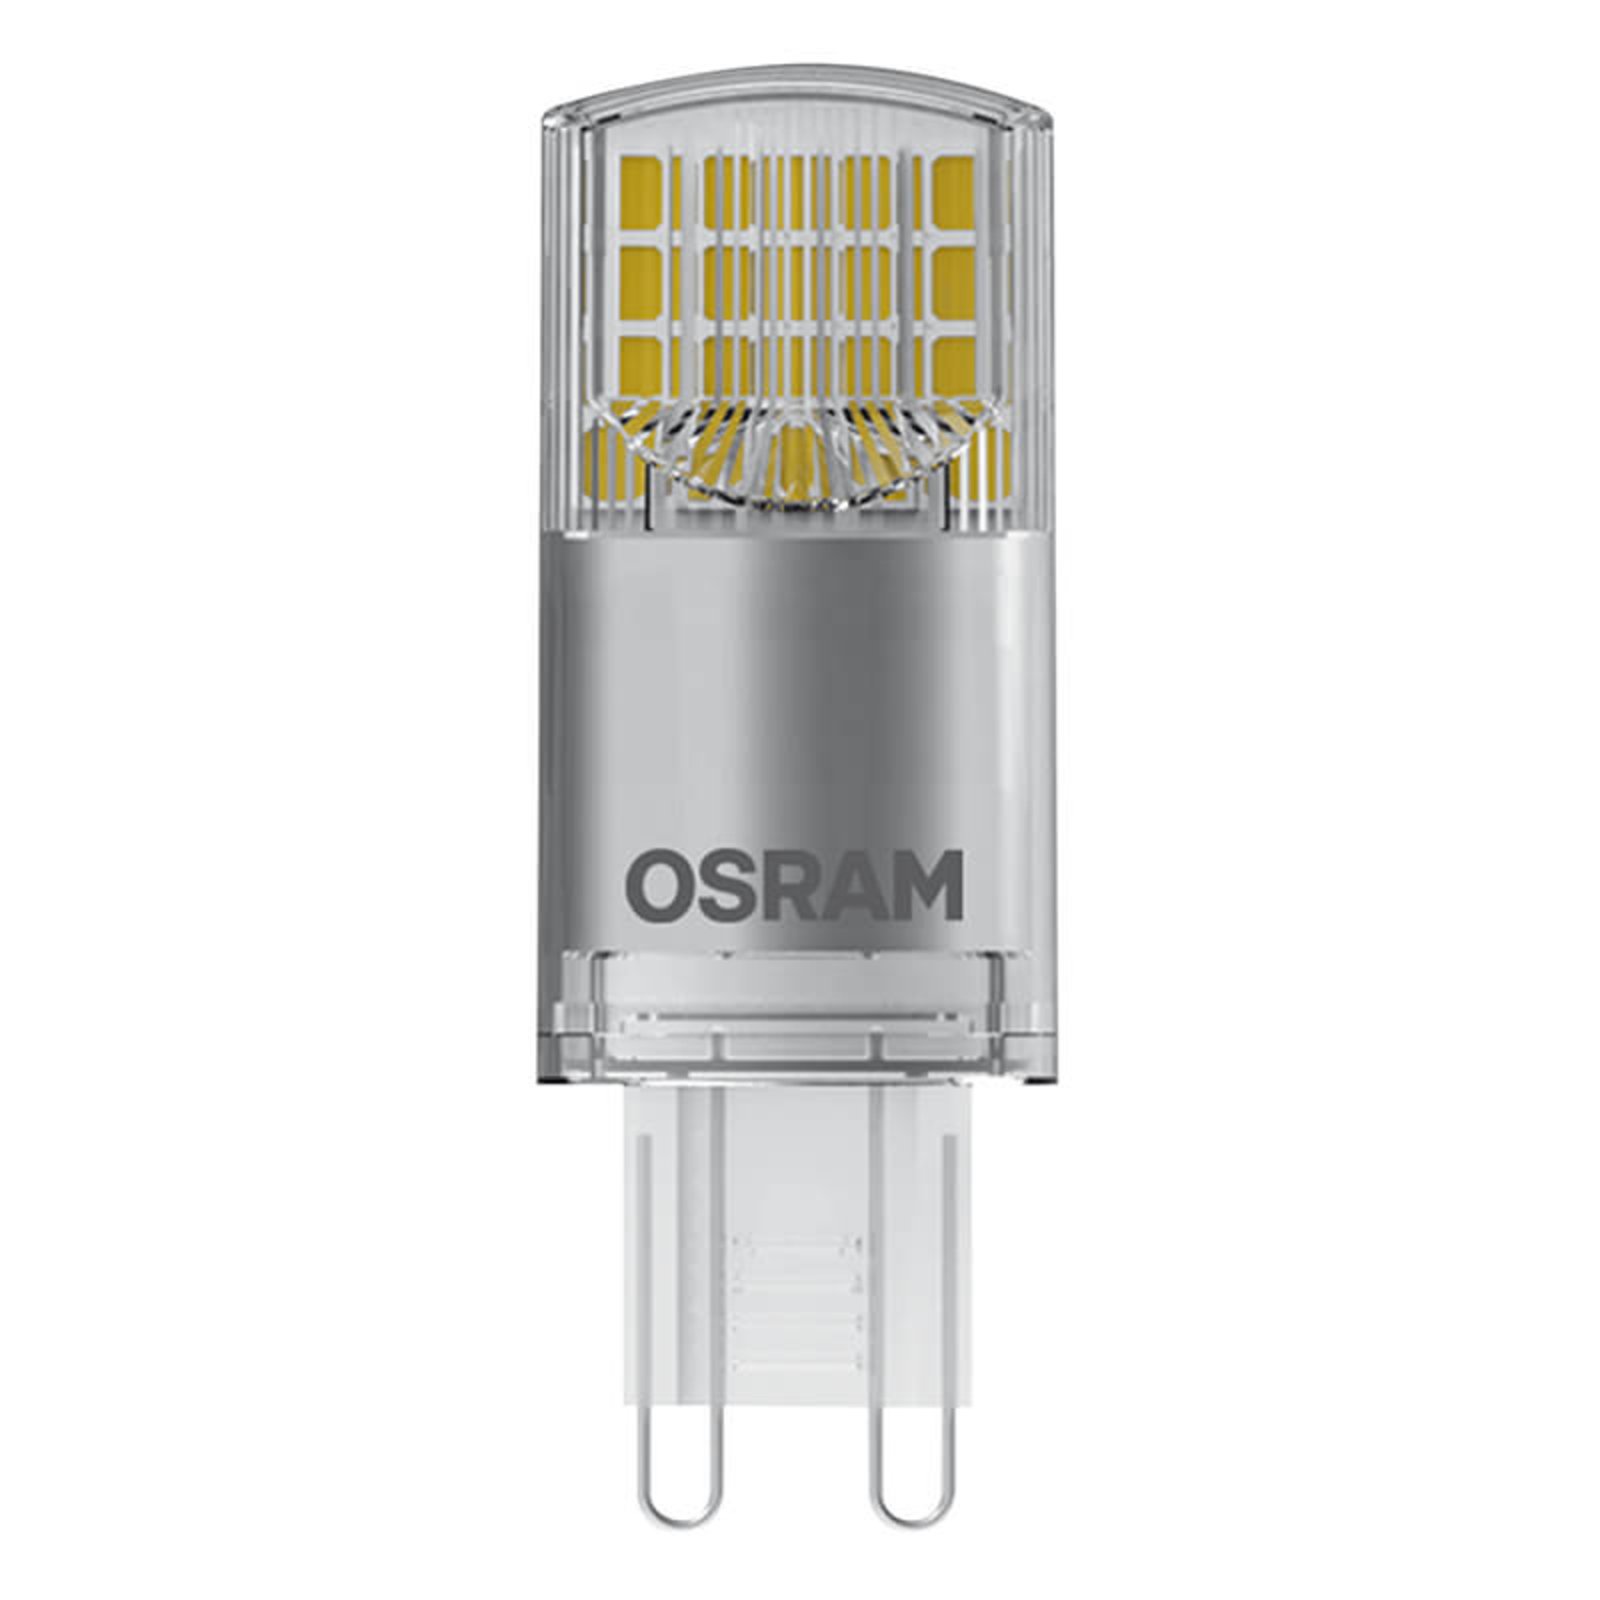 OSRAM LED pinová žárovka G9 3,8W teplá bílá 470 lm